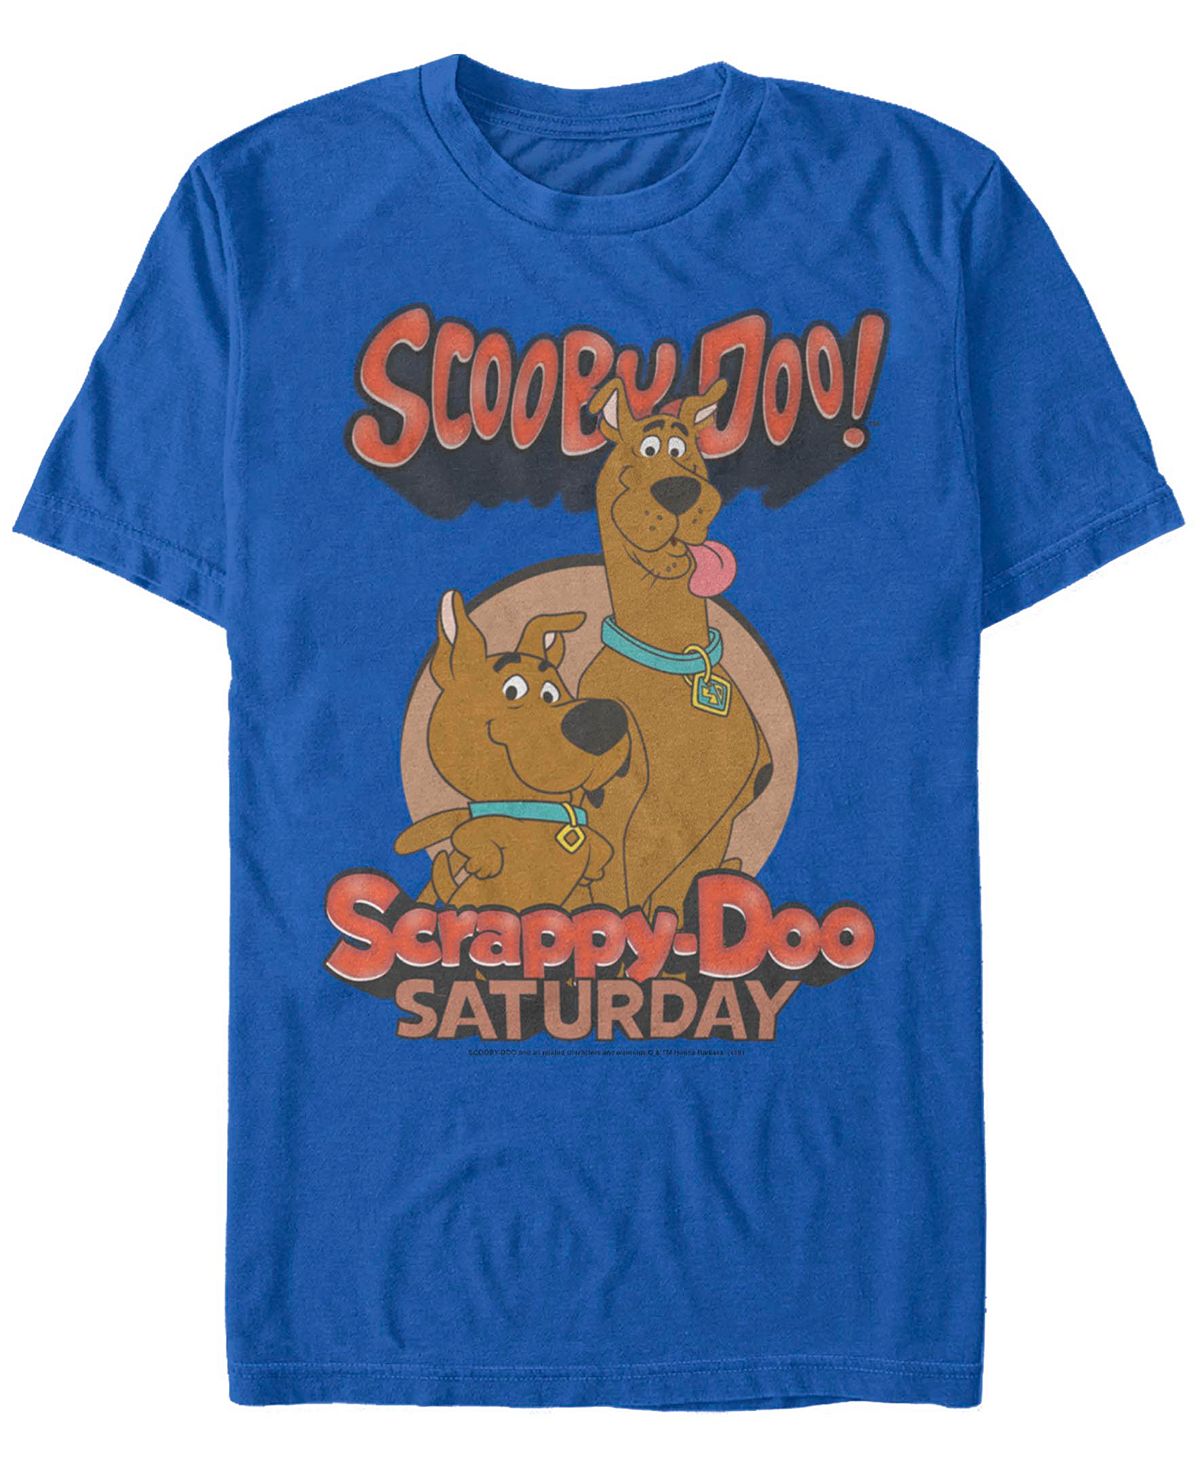 Мужская футболка с коротким рукавом Scooby Doo Saturday Doos Fifth Sun мужская футболка с короткими рукавами rainbow monster box up scooby doo fifth sun черный